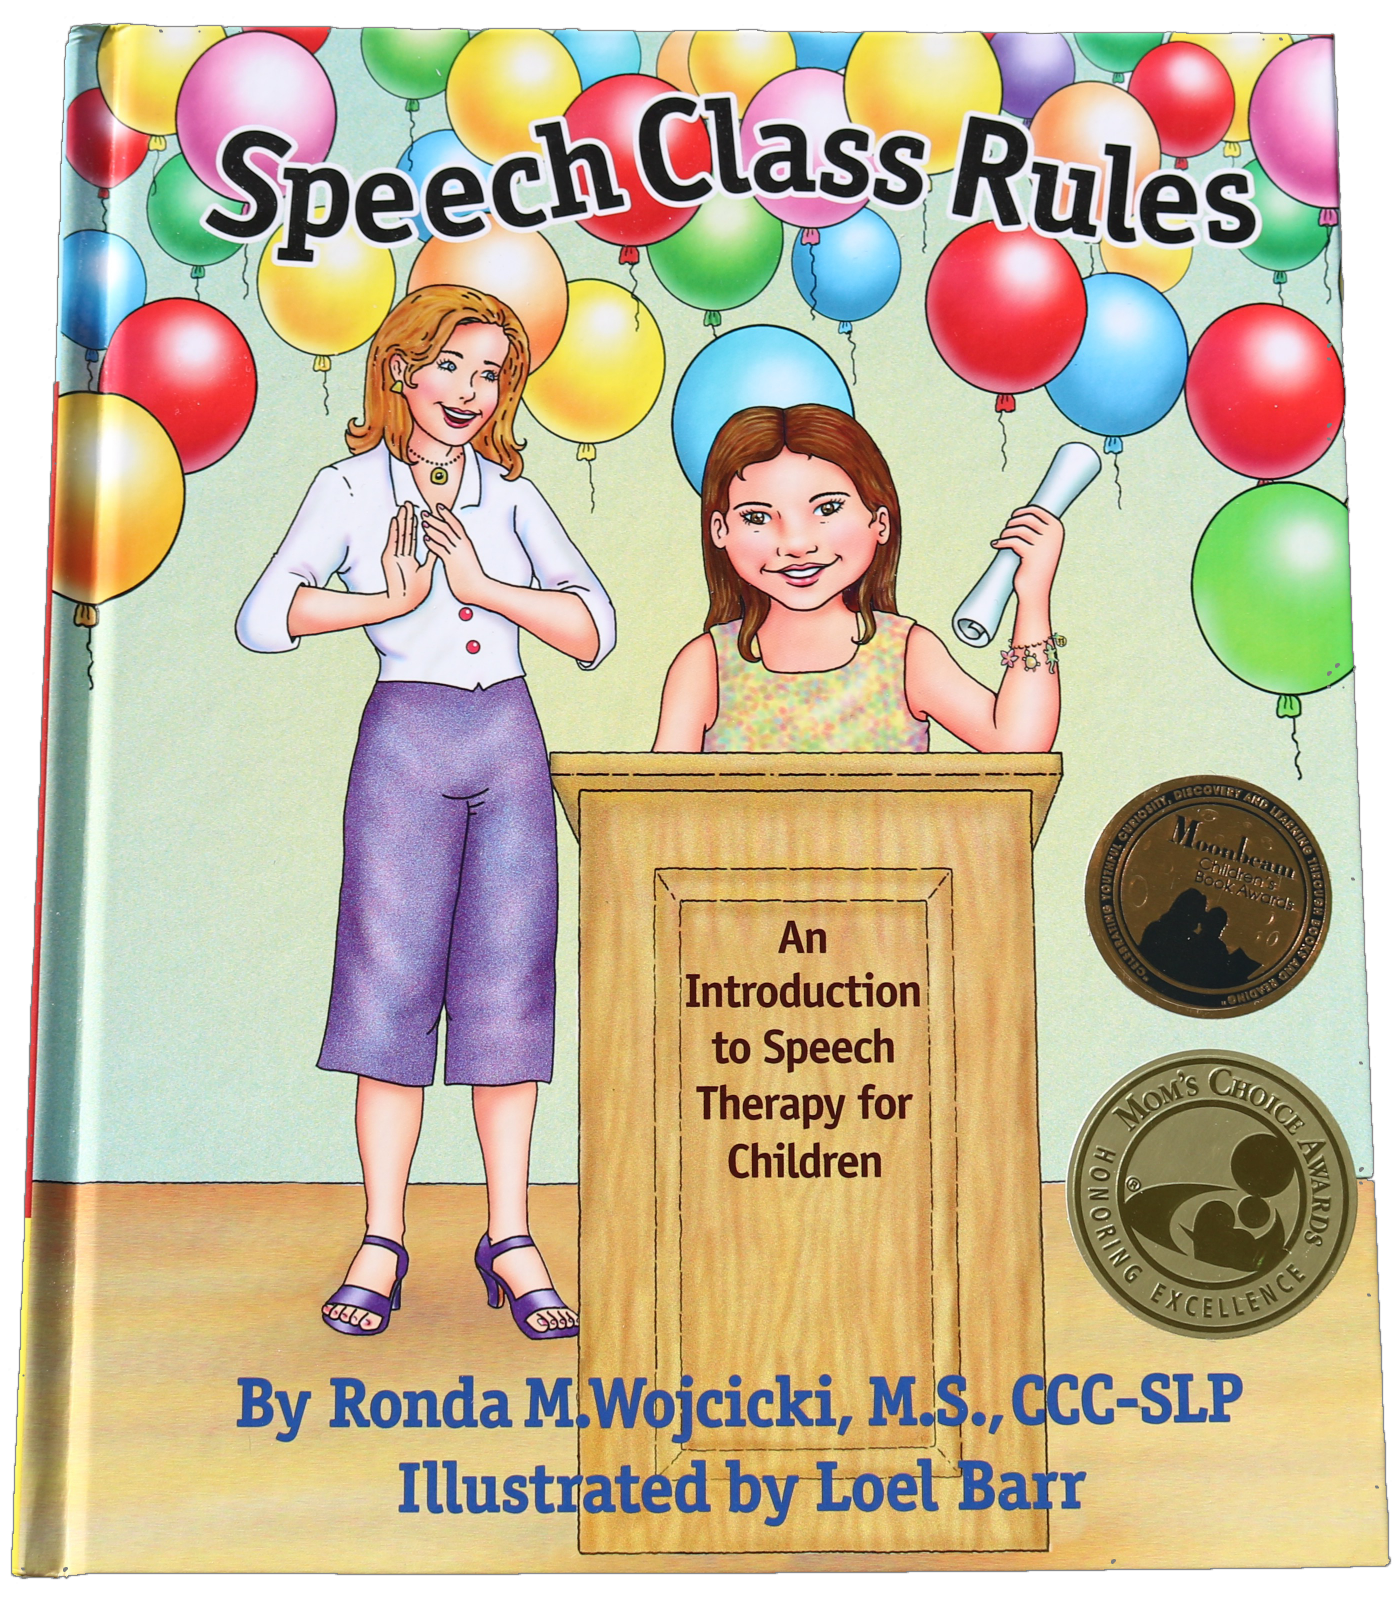 Scholastic Book Club for SLPs - Speech Room News